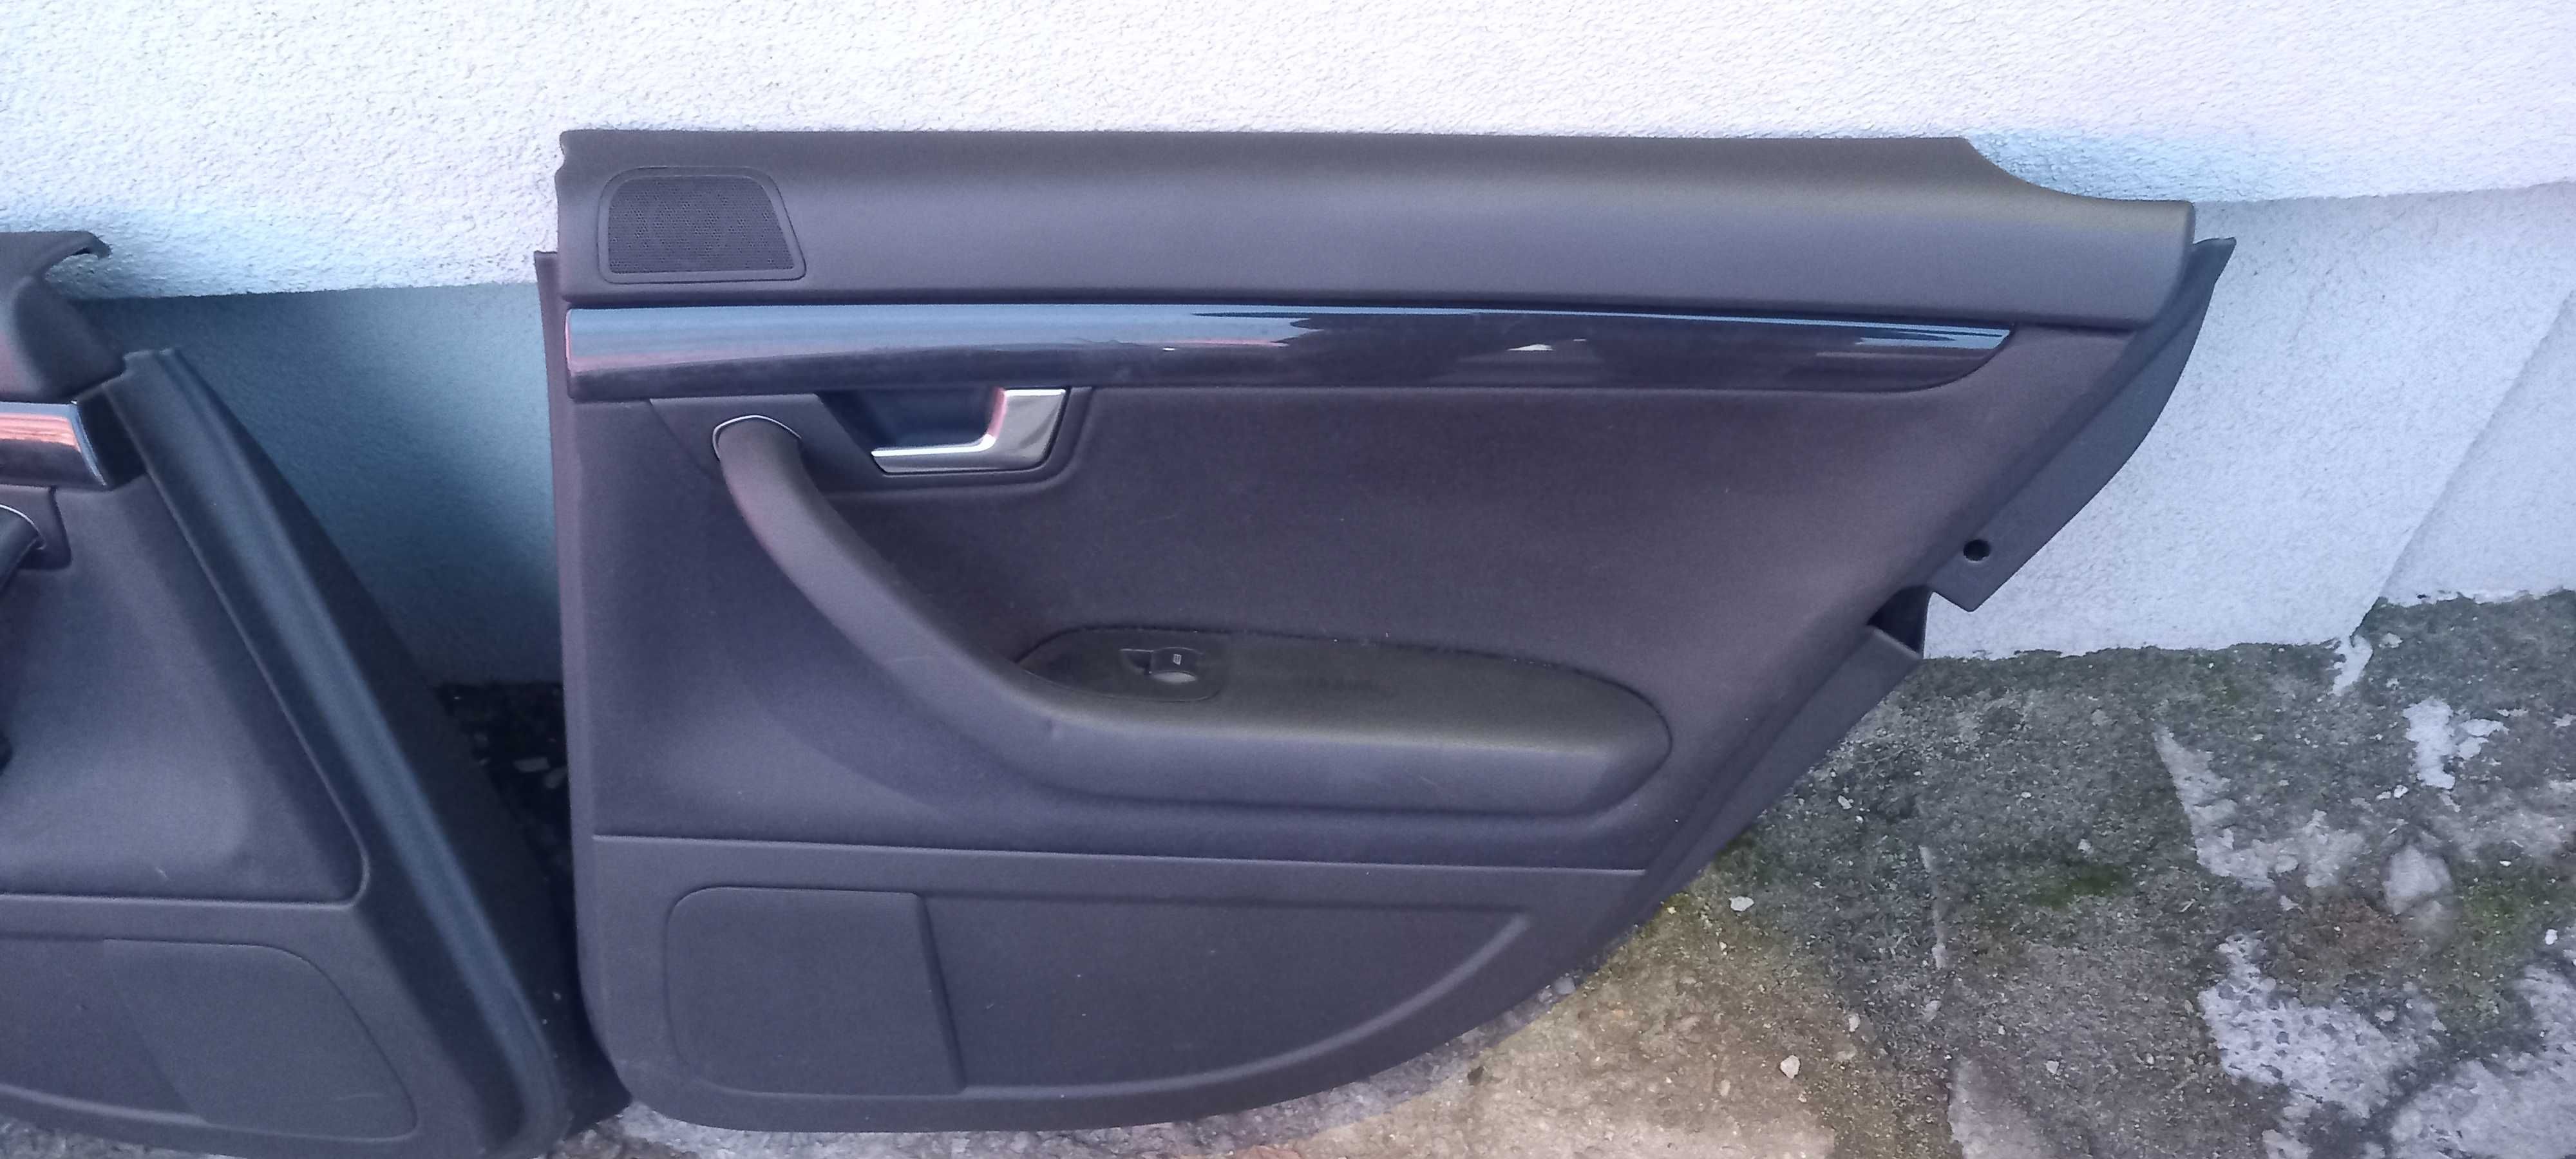 Boczki tapicerka drzwi Audi A4 B6 kpl el.szyby x4